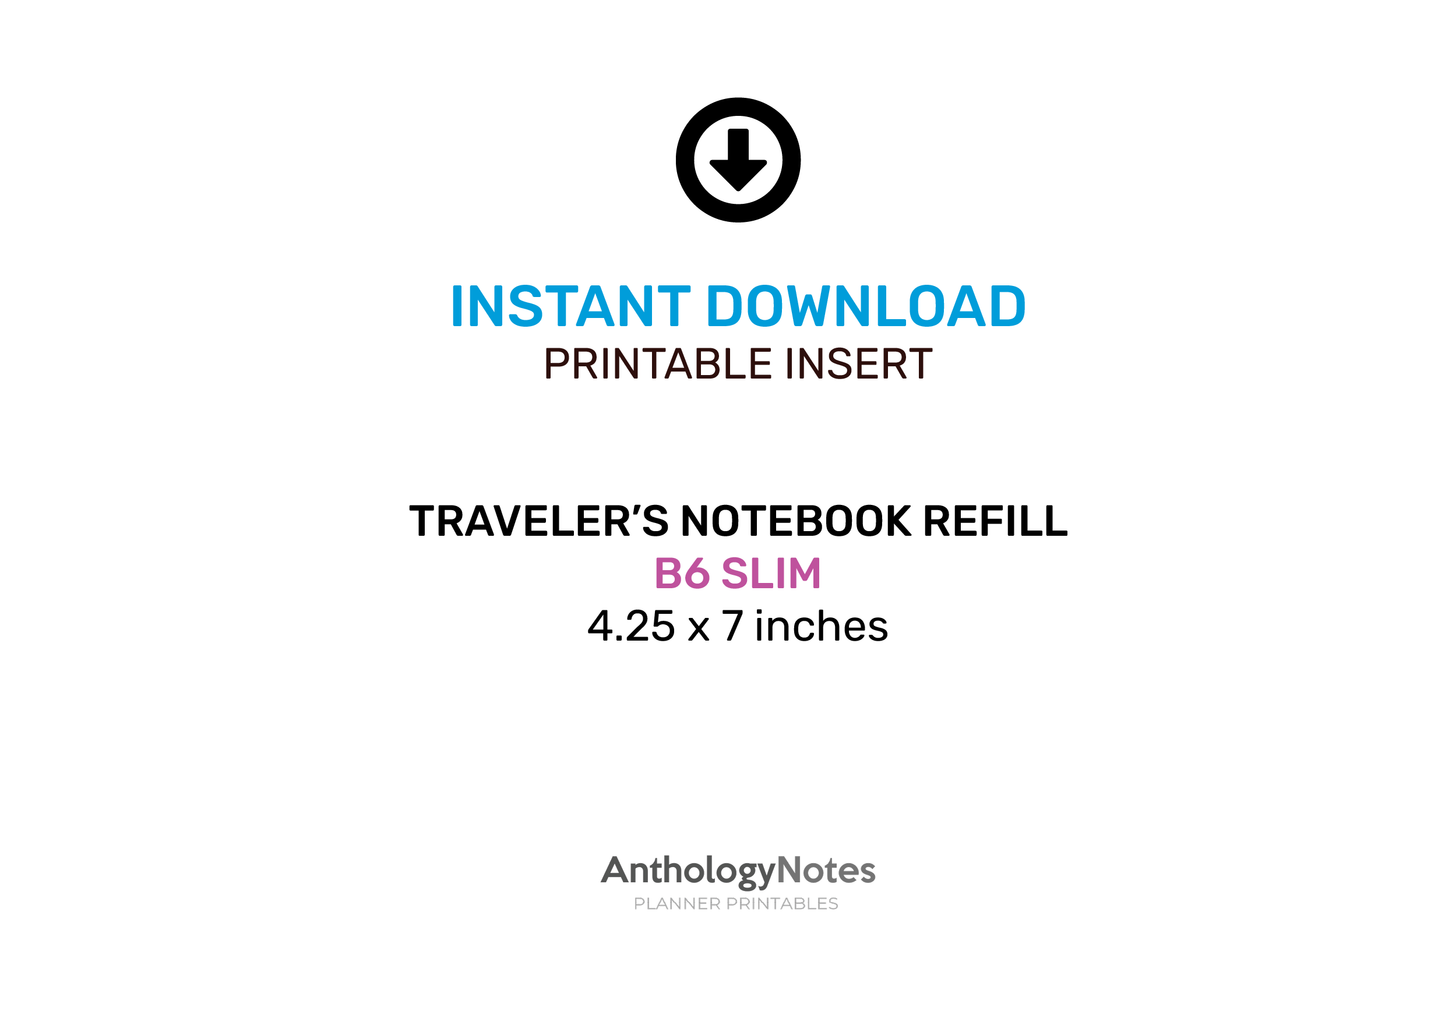 B6 Slim Bundle SET Printable Insert Grid, Blank, Dot Grid, Cross Grid, Lined, Traveler's Notebook Rapid Log